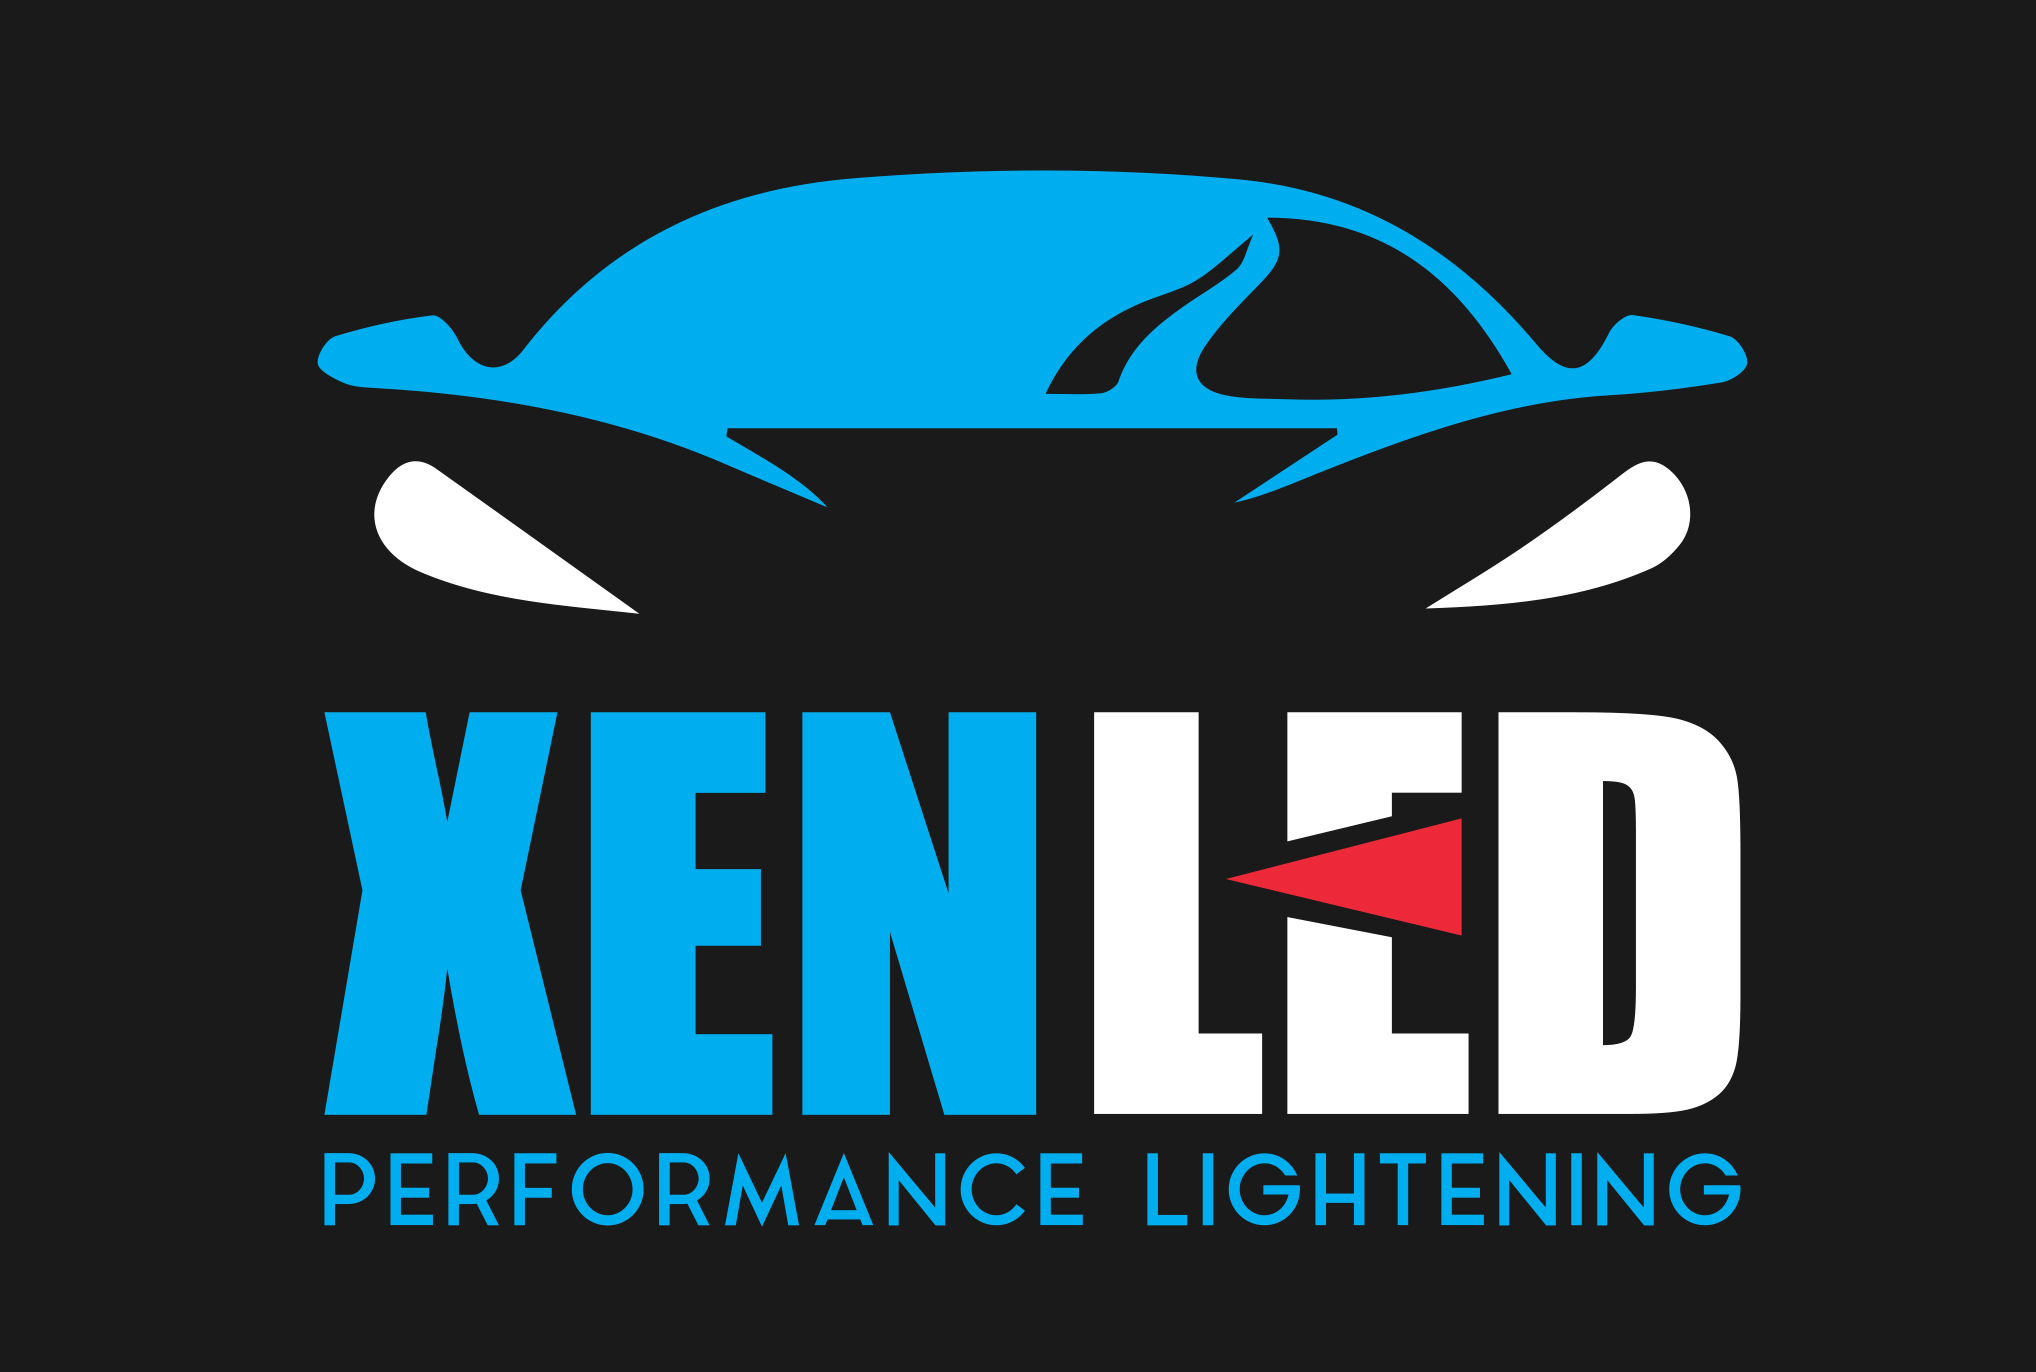 XenLed LED kit